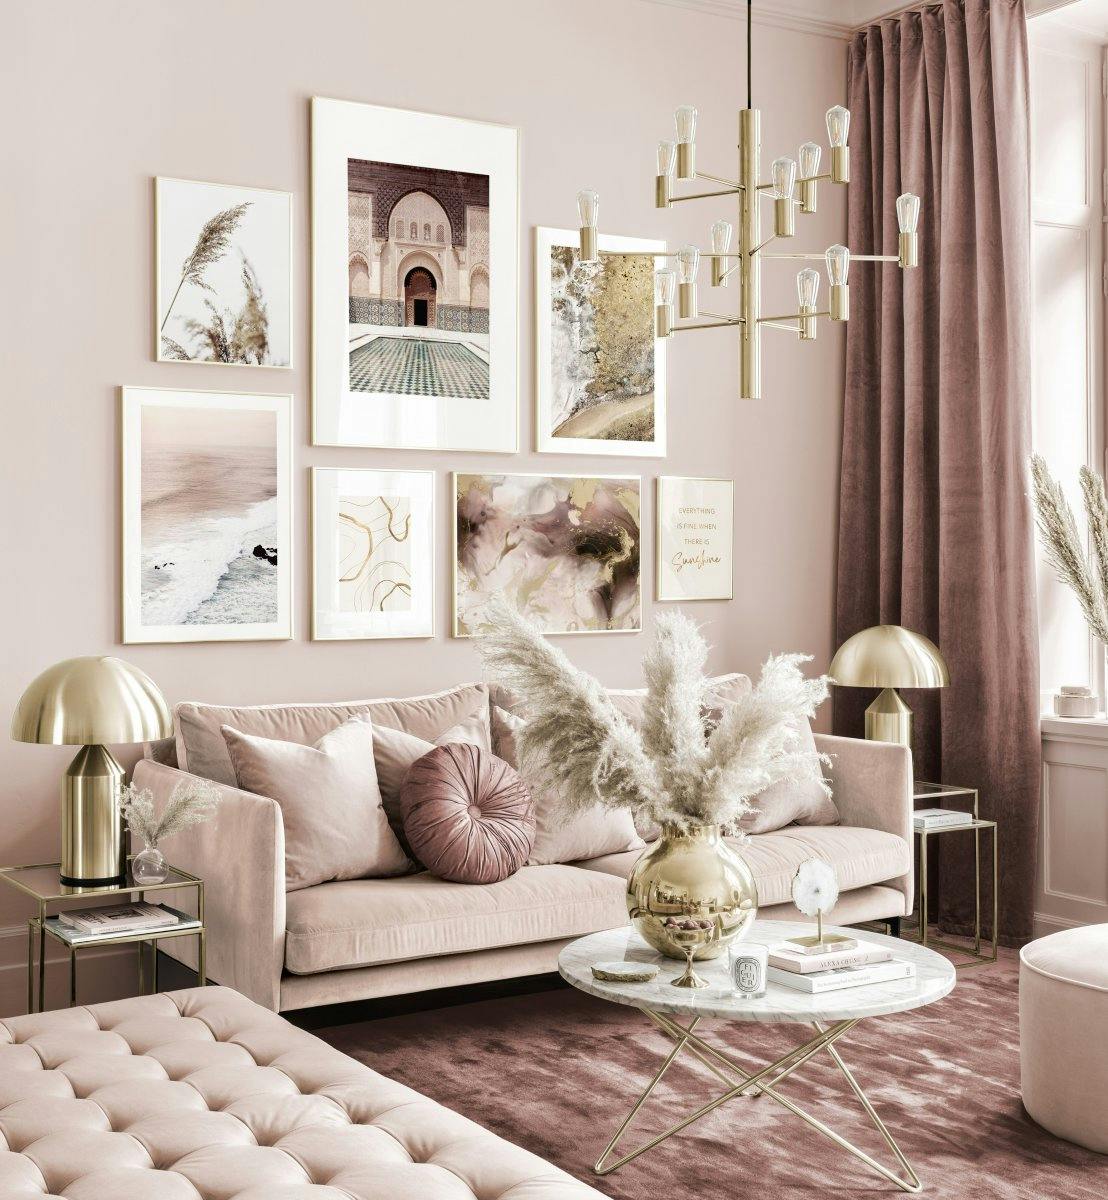 Elegant billedvæg rosa-beige stue abstrakte plakater gudrammer